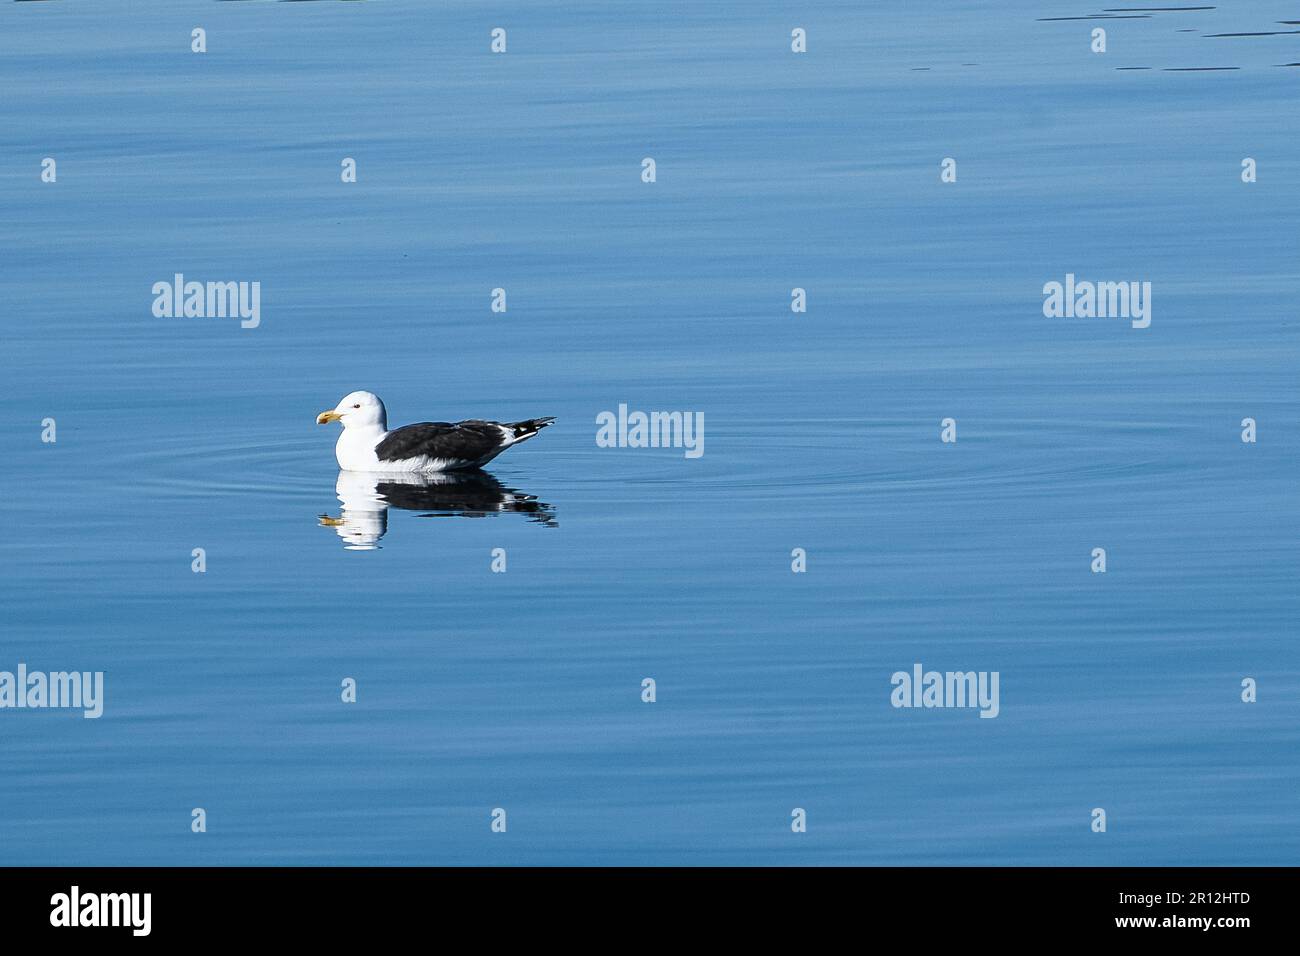 seagull nuota sul fiordo in Norvegia in acque calme. L'uccello marino si riflette nell'acqua. Foto di animali dalla Scandinavia Foto Stock